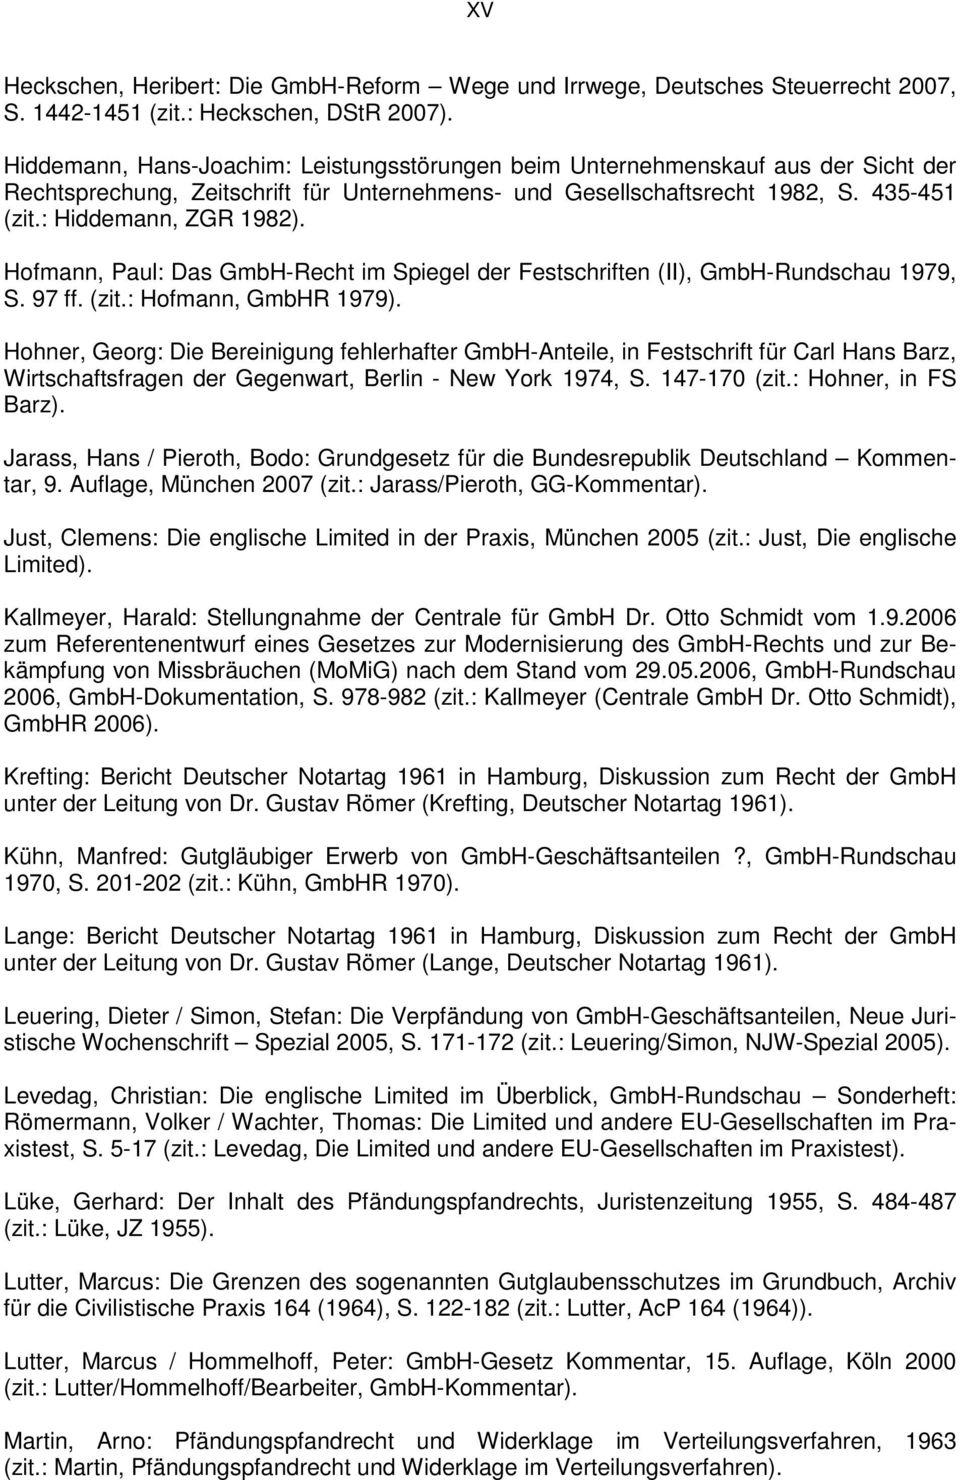 Hofmann, Paul: Das GmbH-Recht im Spiegel der Festschriften (II), GmbH-Rundschau 1979, S. 97 ff. (zit.: Hofmann, GmbHR 1979).